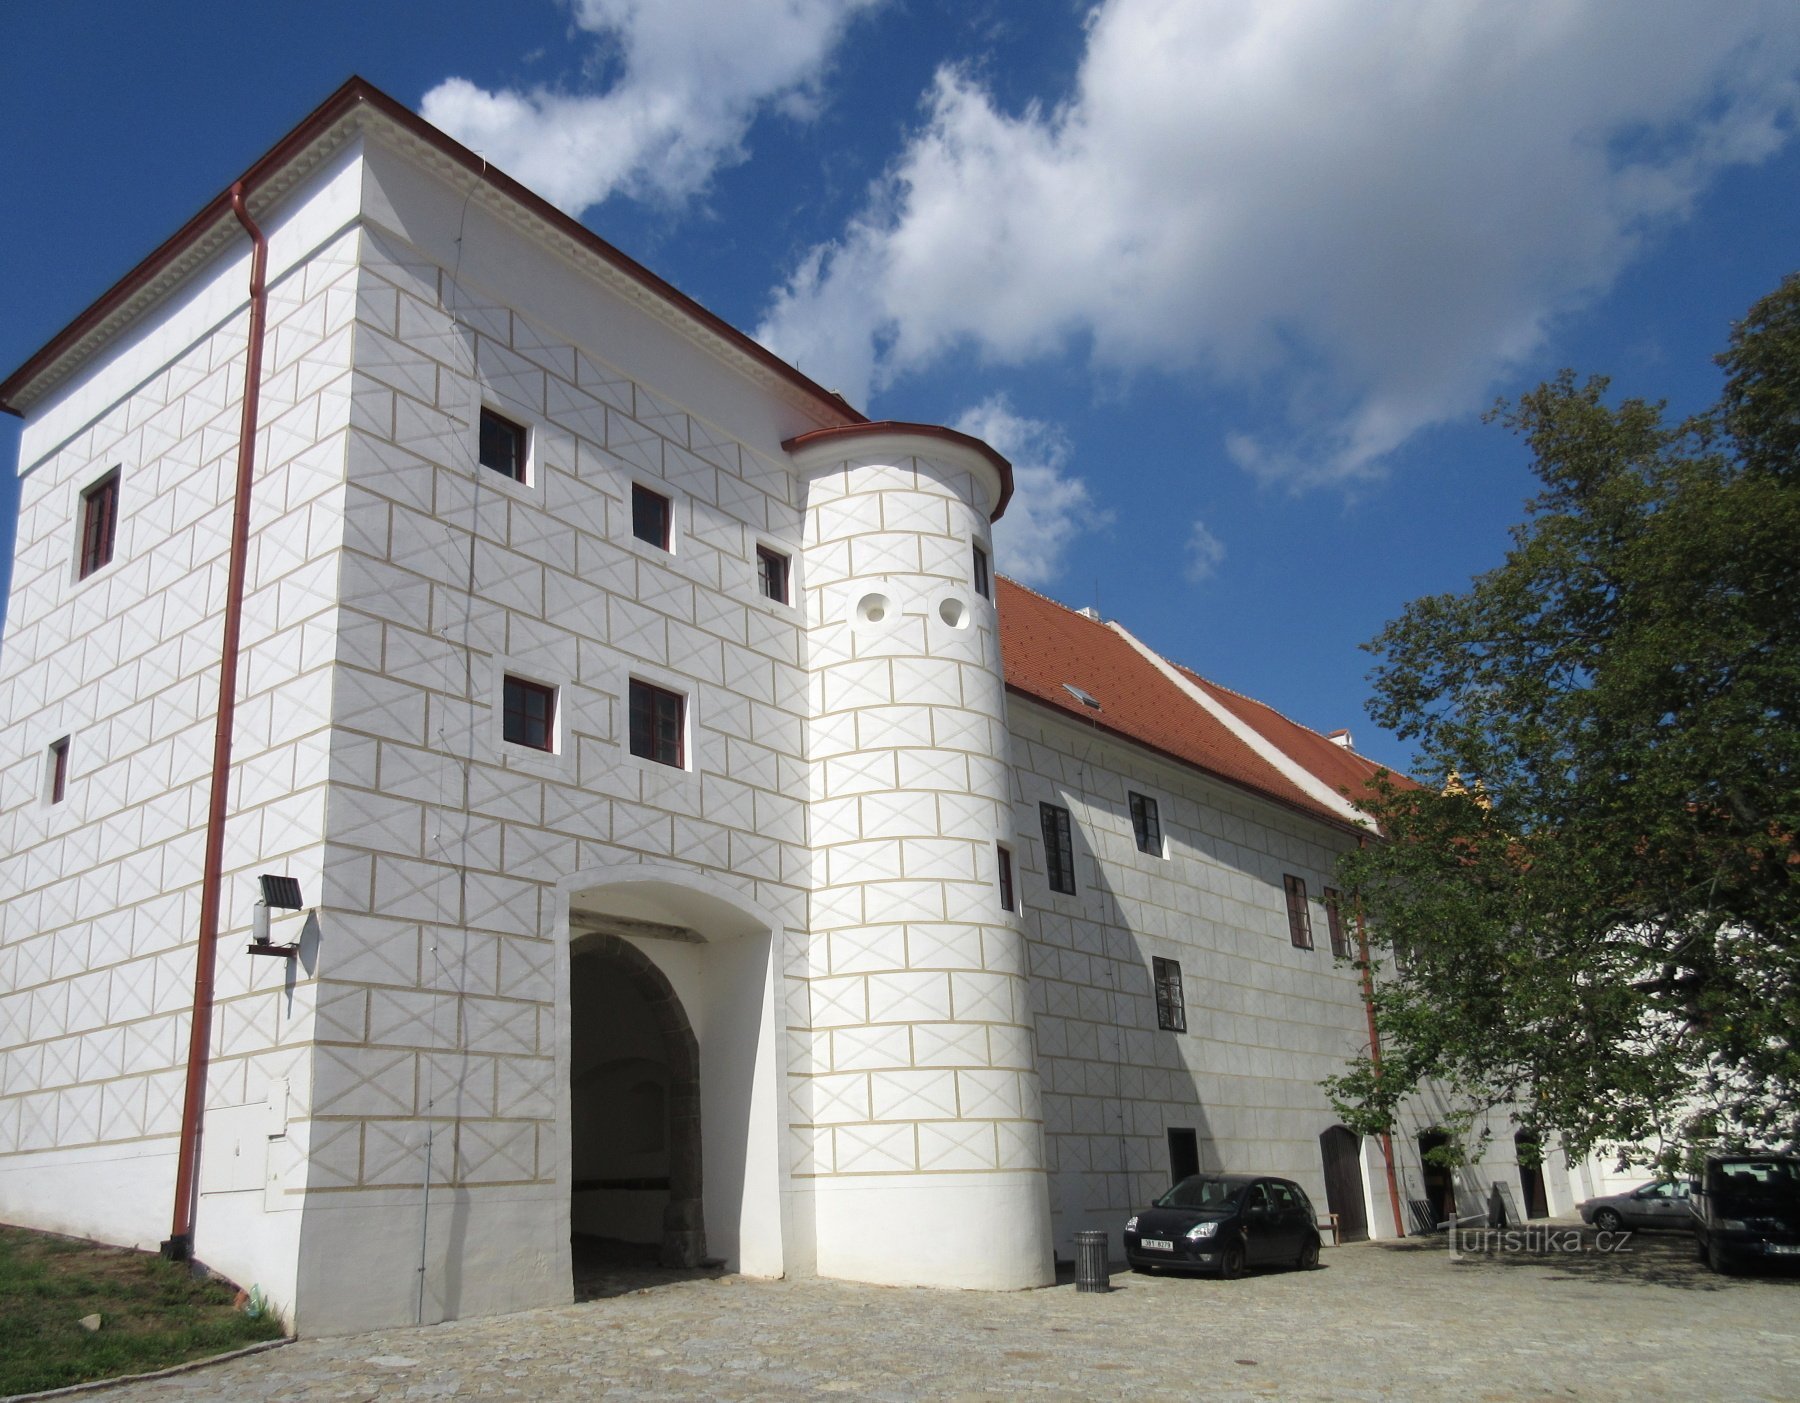 Třebíč – lâu đài, trước đây là tu viện Benedictine, hiện là bảo tàng